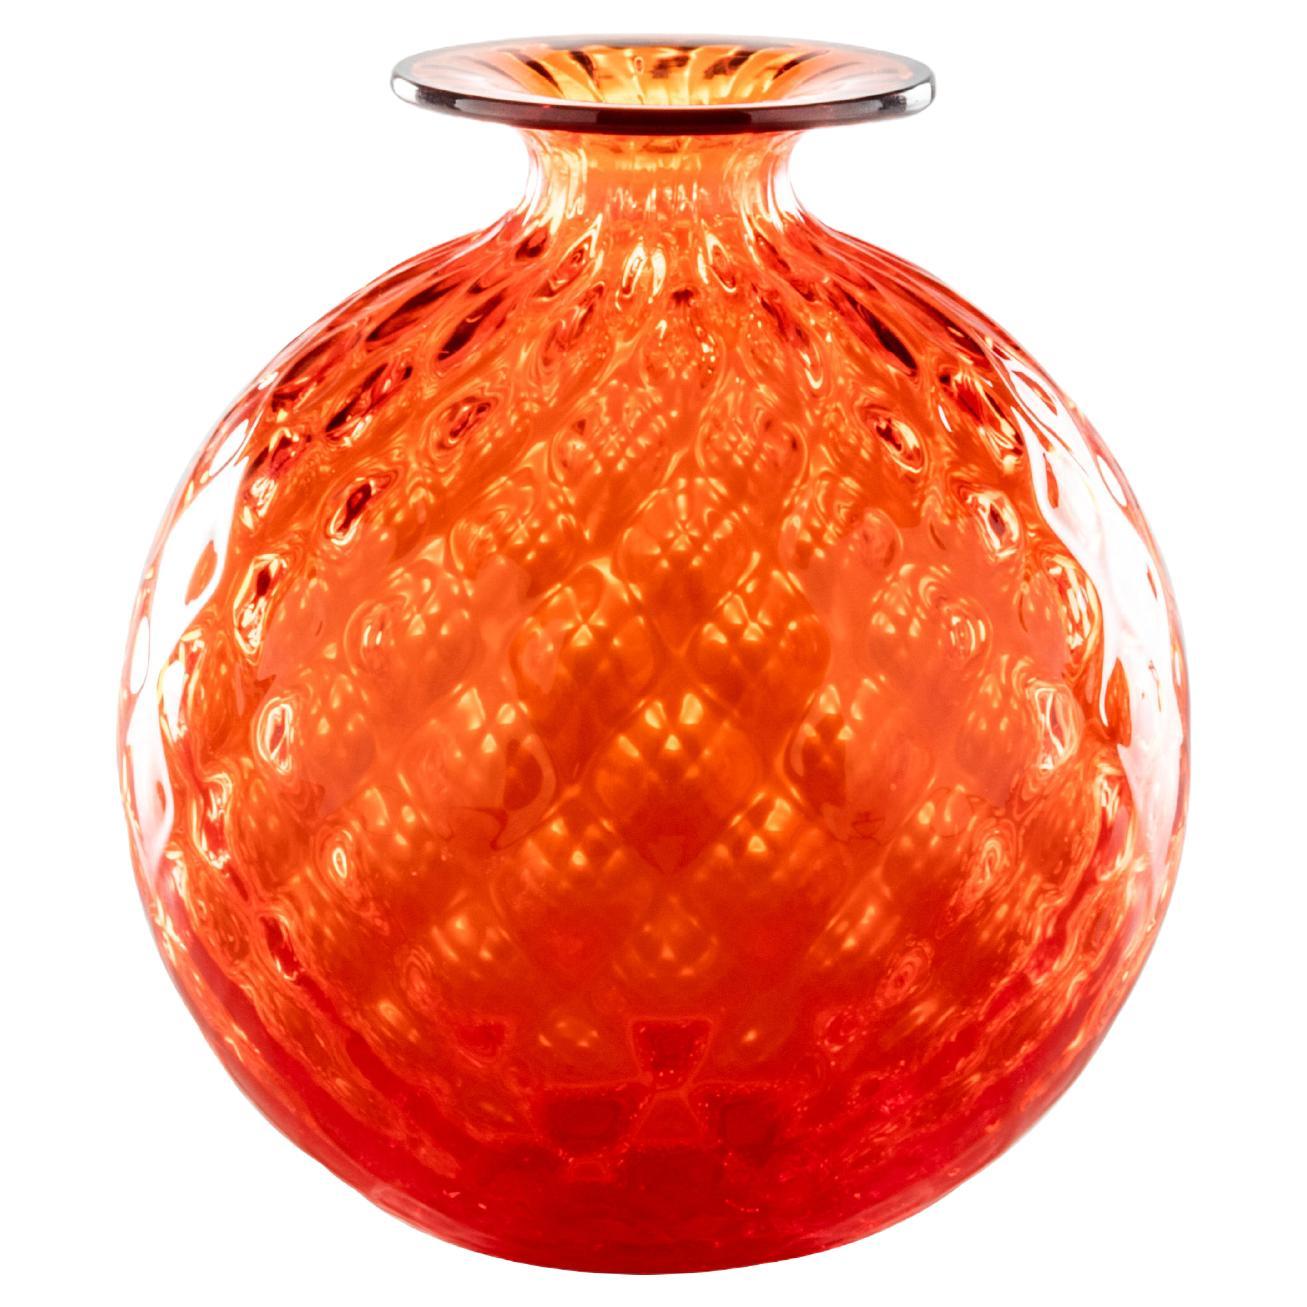 Monofiore Balloton Glass Vase in Orange with Red Thread Rim by Venini